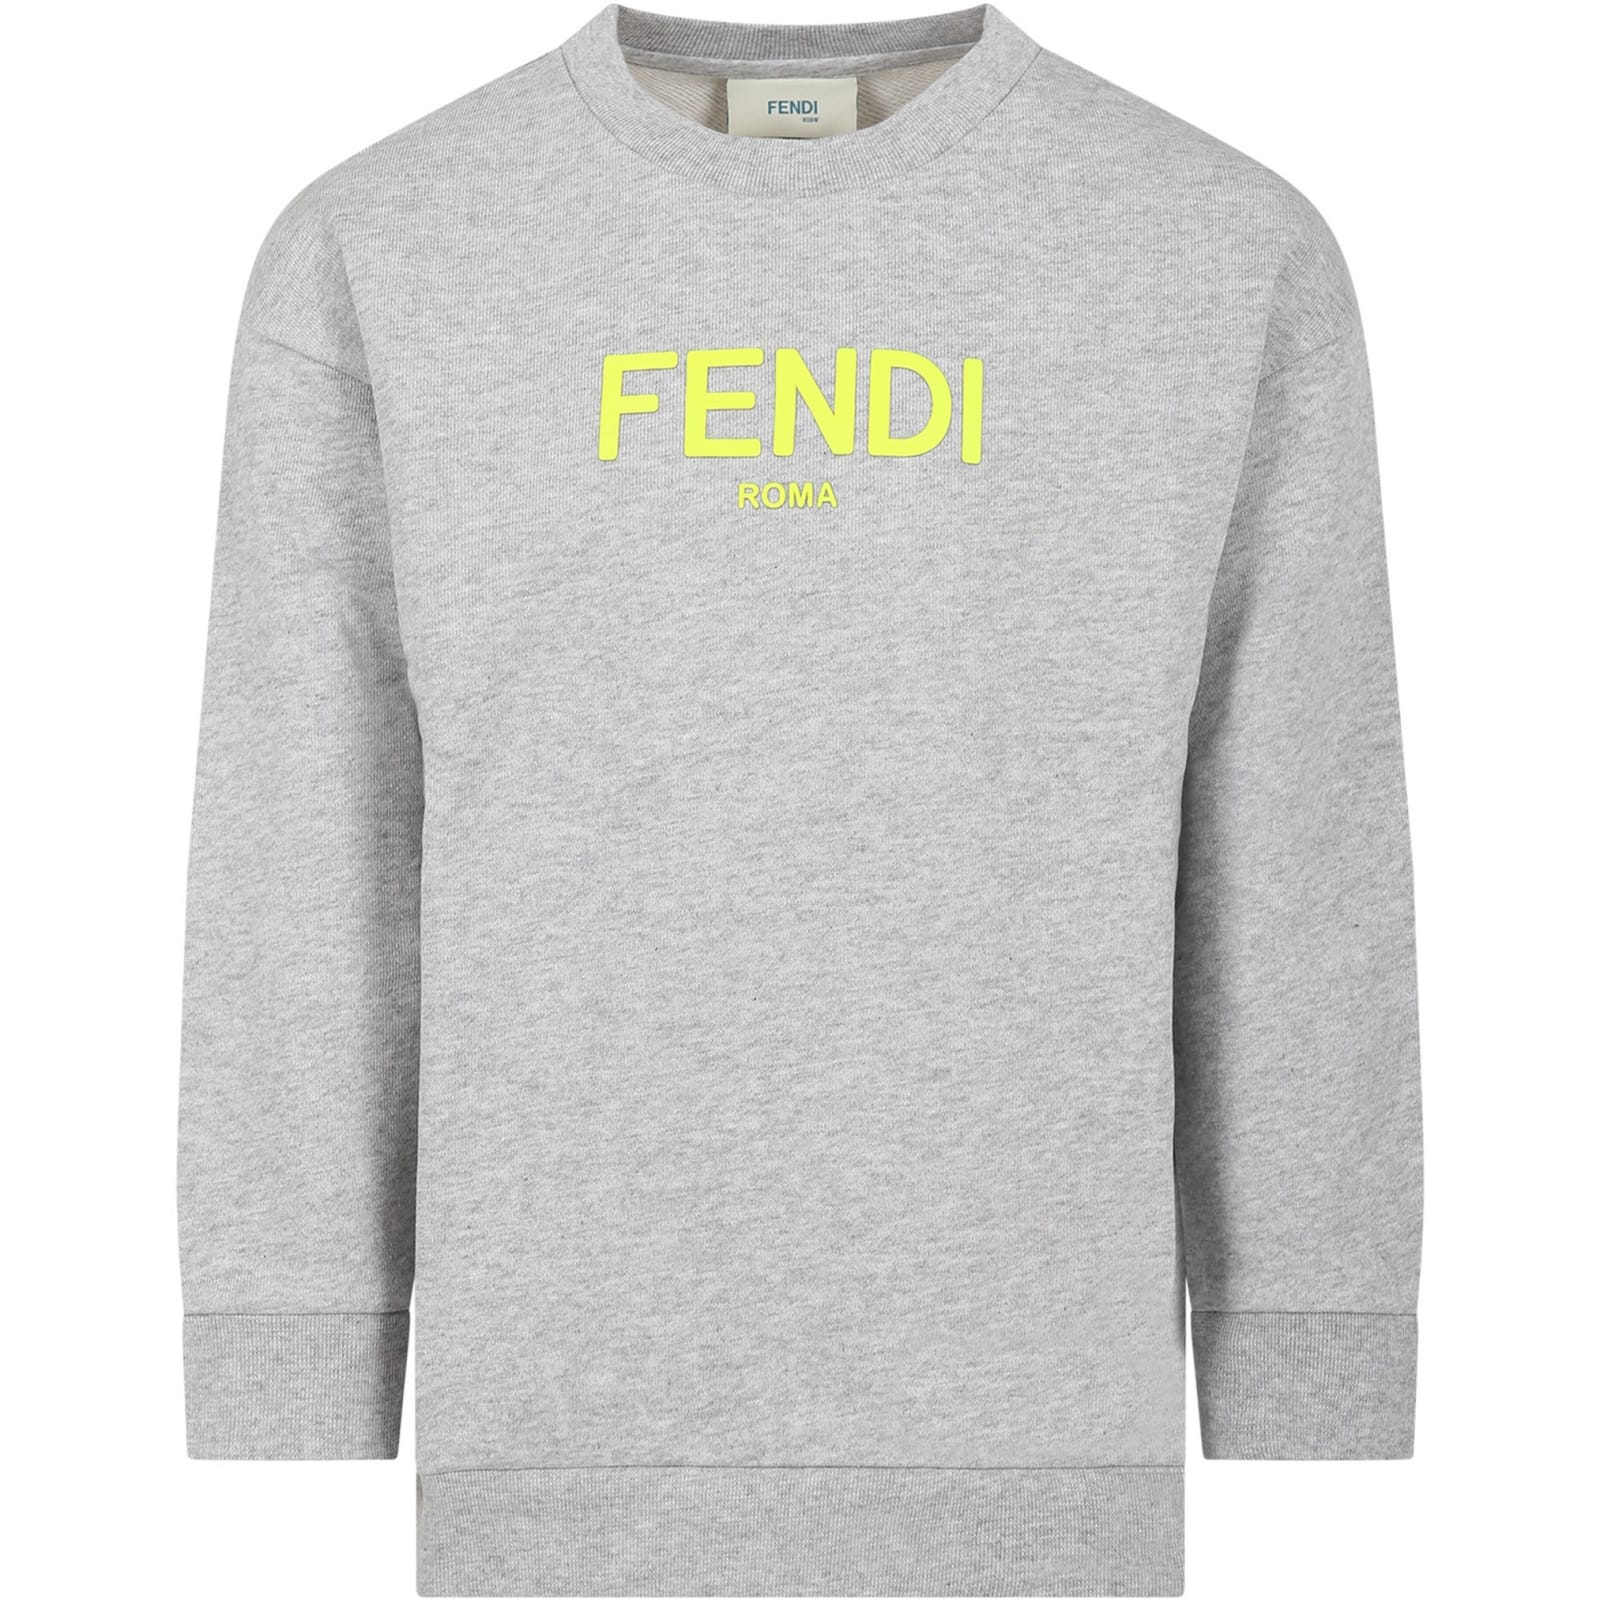 Fendi Grey Sweatshirt For Kids With Logo